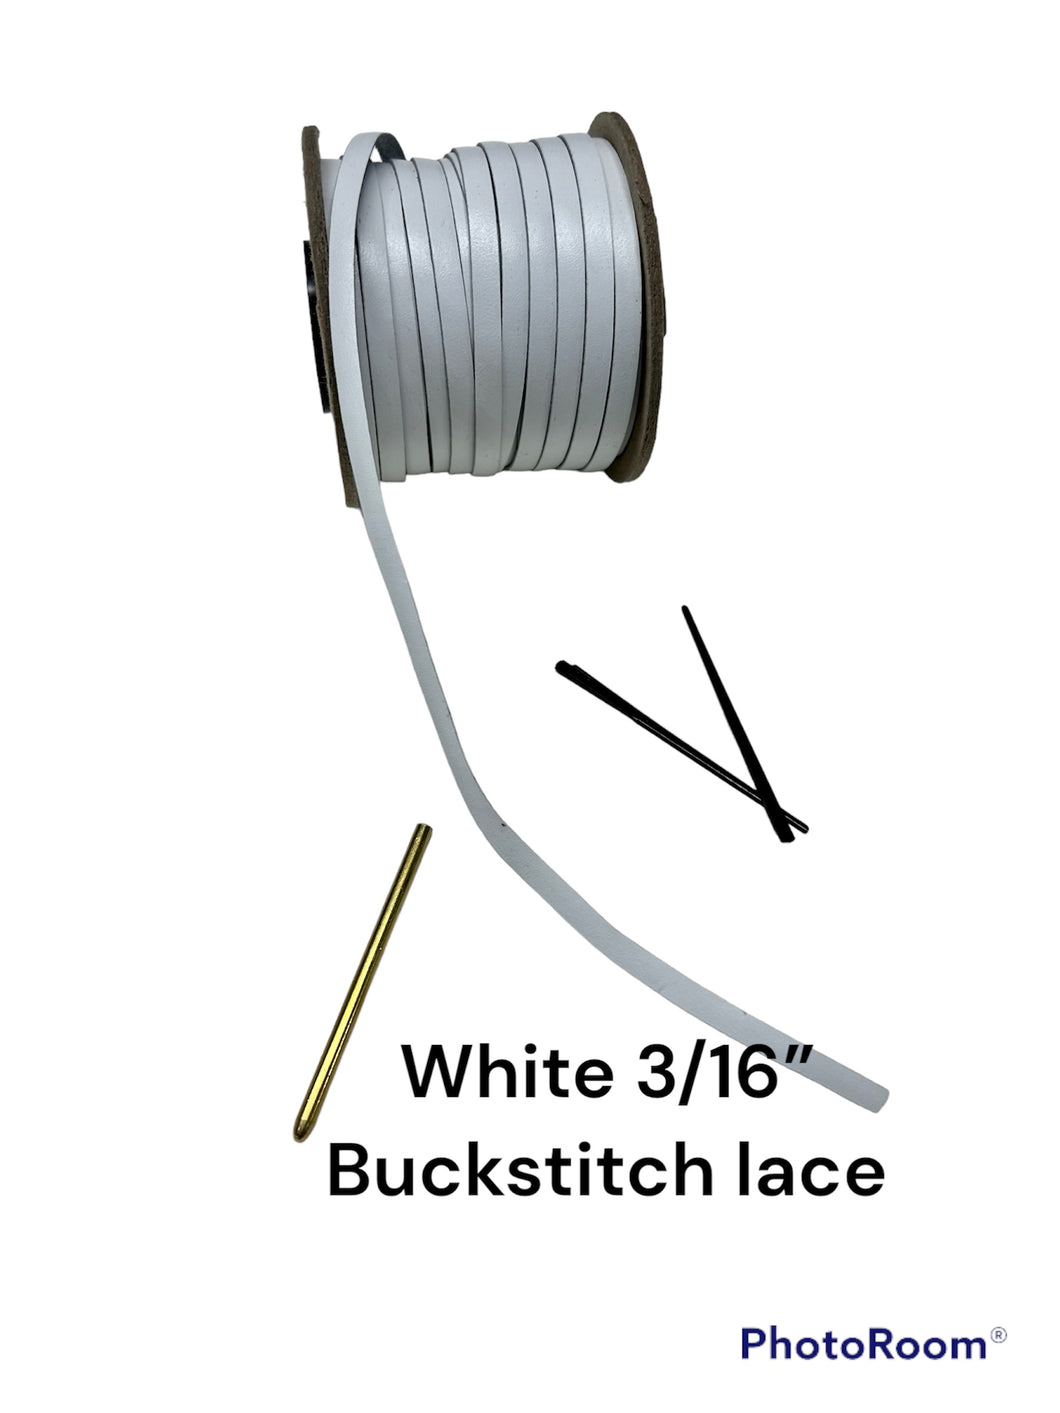 White 3/16” Buckstitch lace